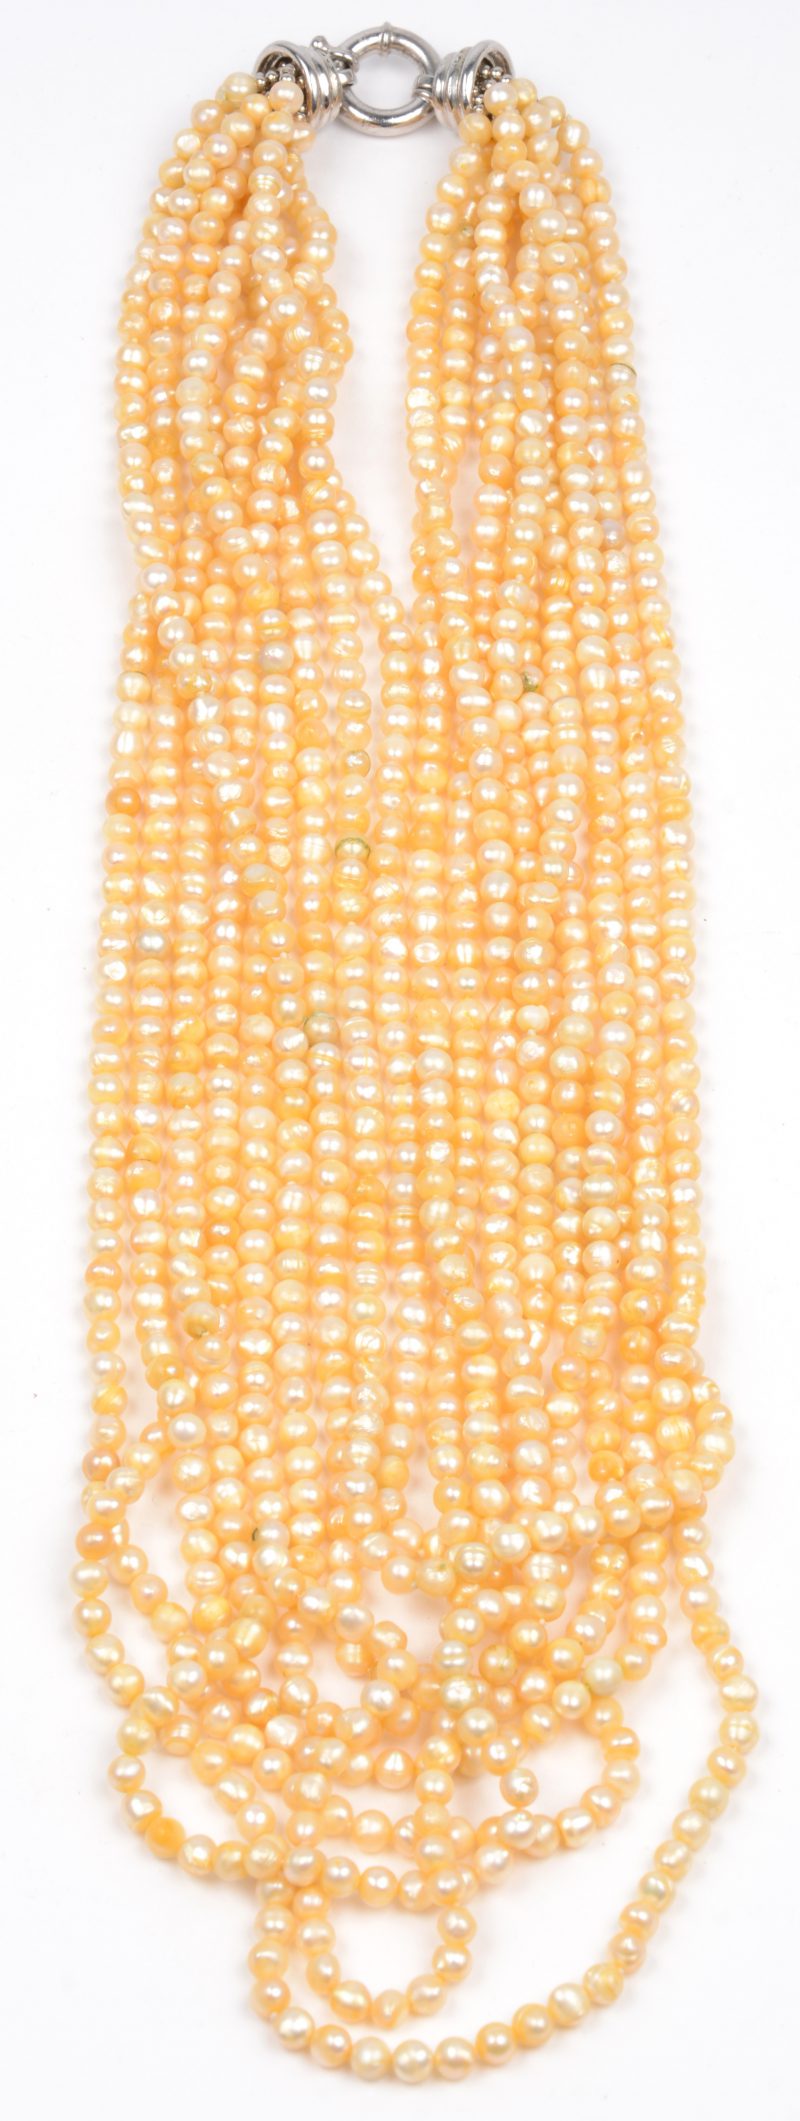 Een halsketting met negen rijen kleine gele zoetwaterparels.